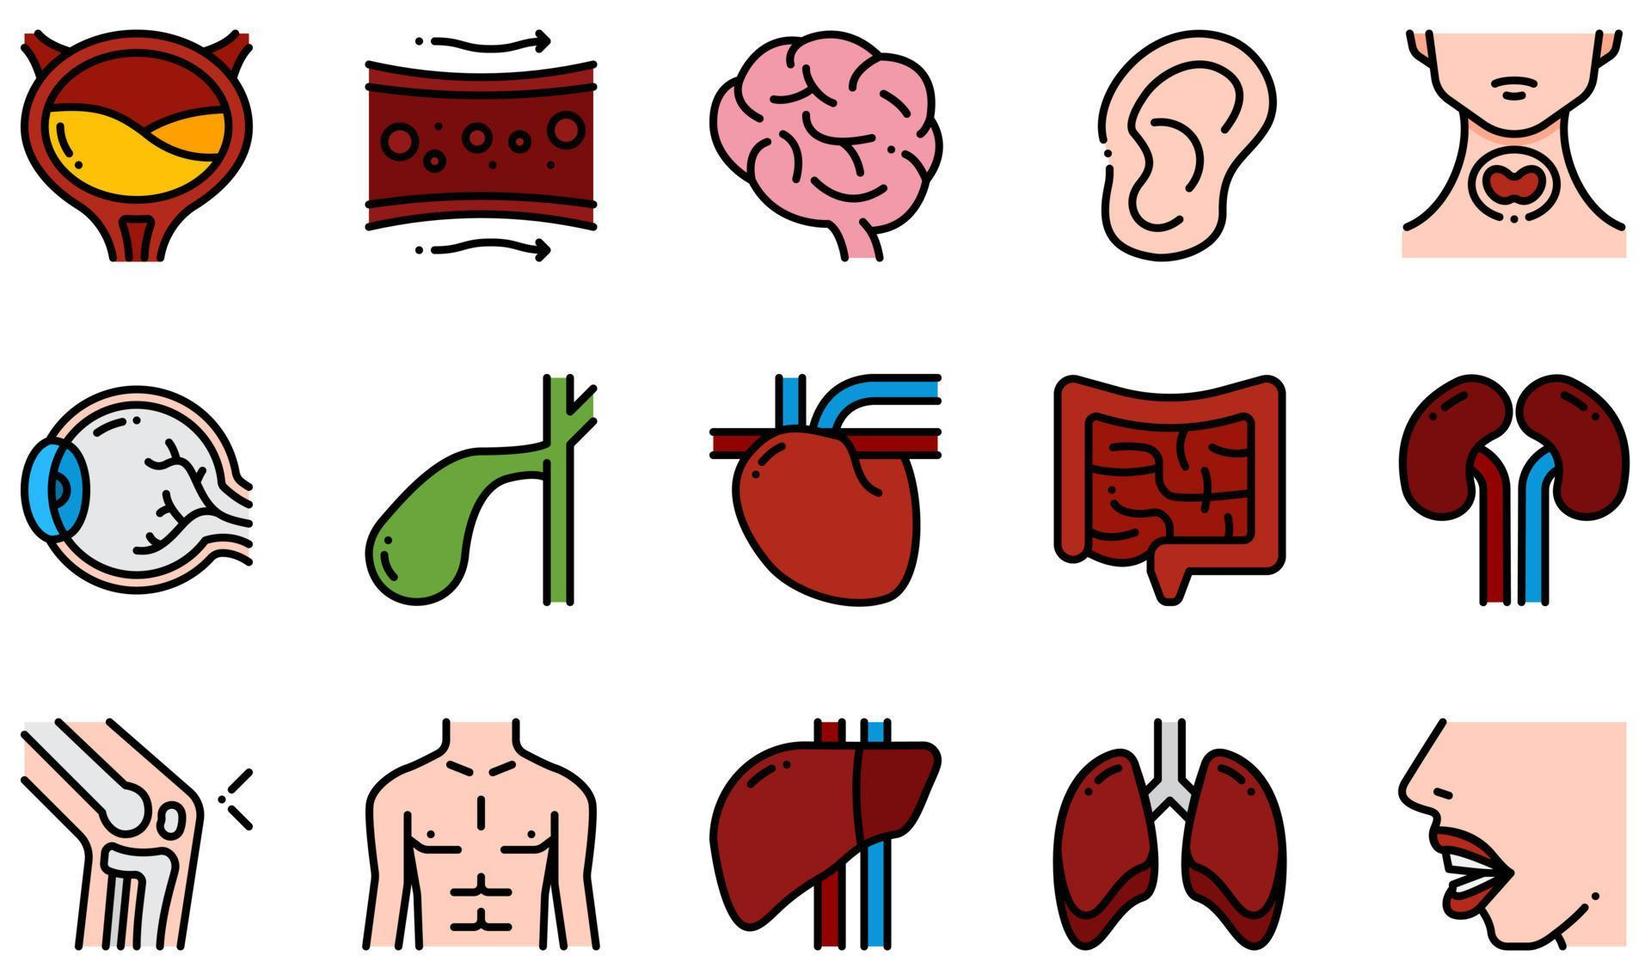 set van vector iconen gerelateerd aan het menselijk lichaam. bevat pictogrammen zoals blaas, bloedvat, hersenen, oor, oog, hart en meer.